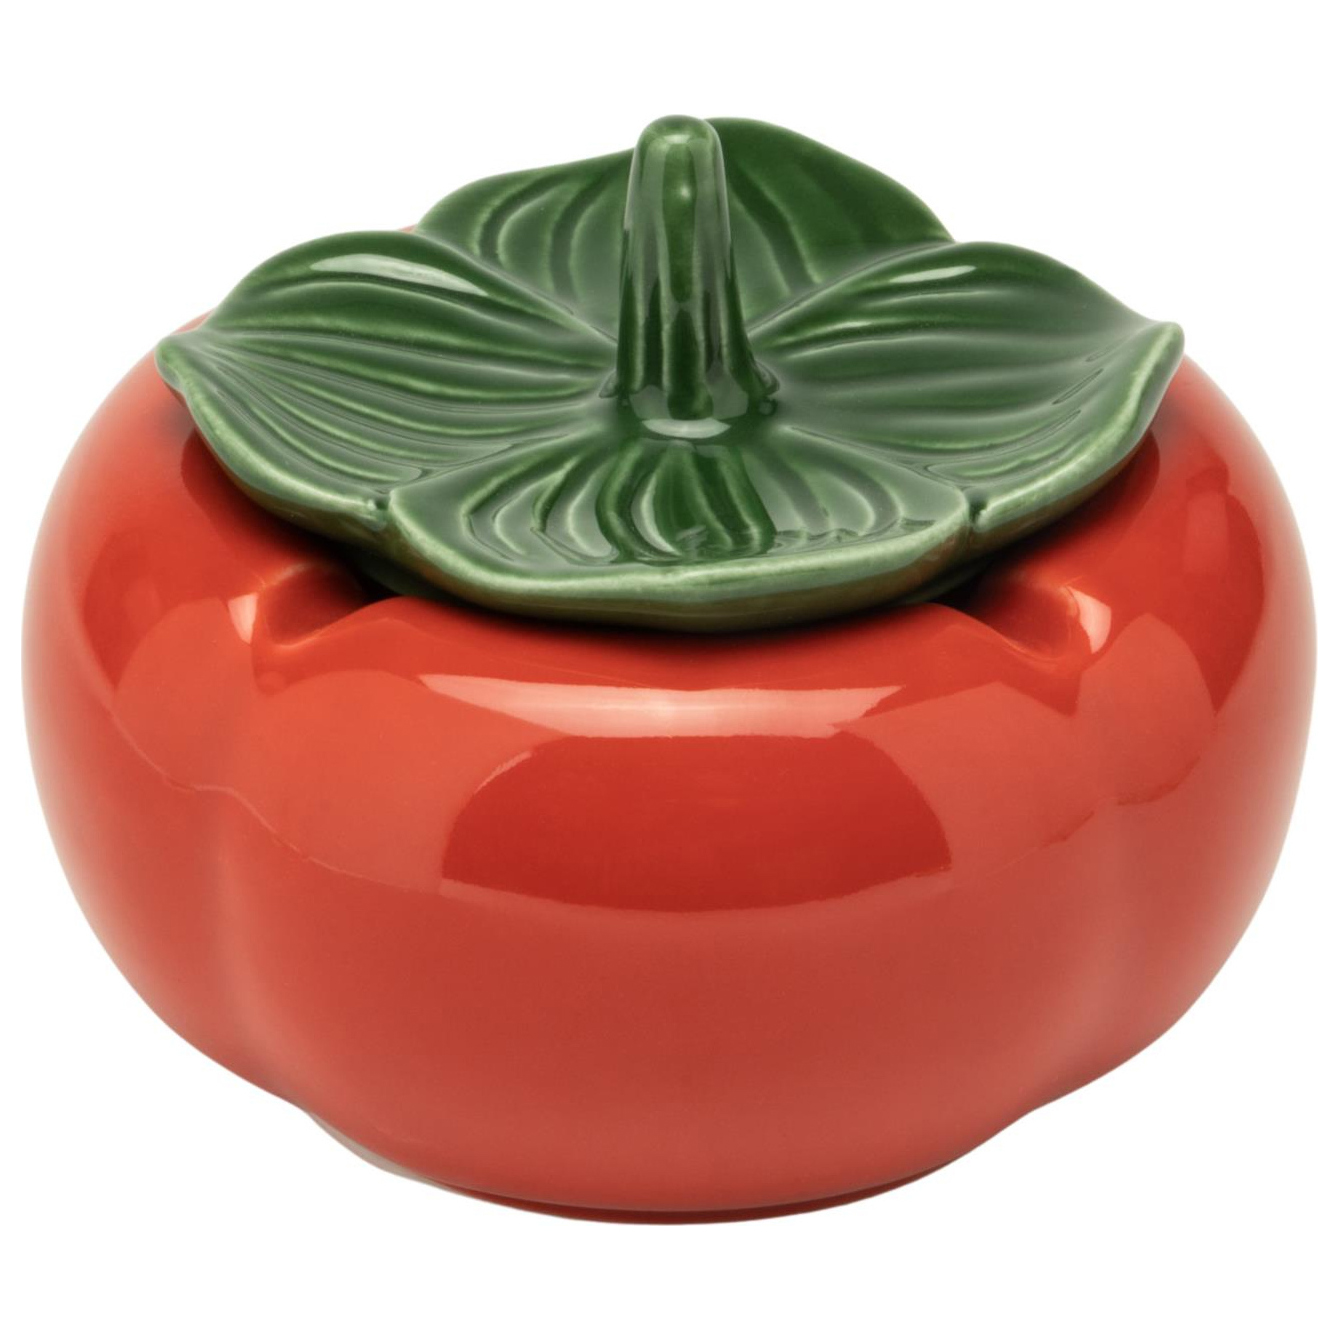 Windascher Keramik Tomate mit Deckel 4 Ablagen Ø 10,5 cm 